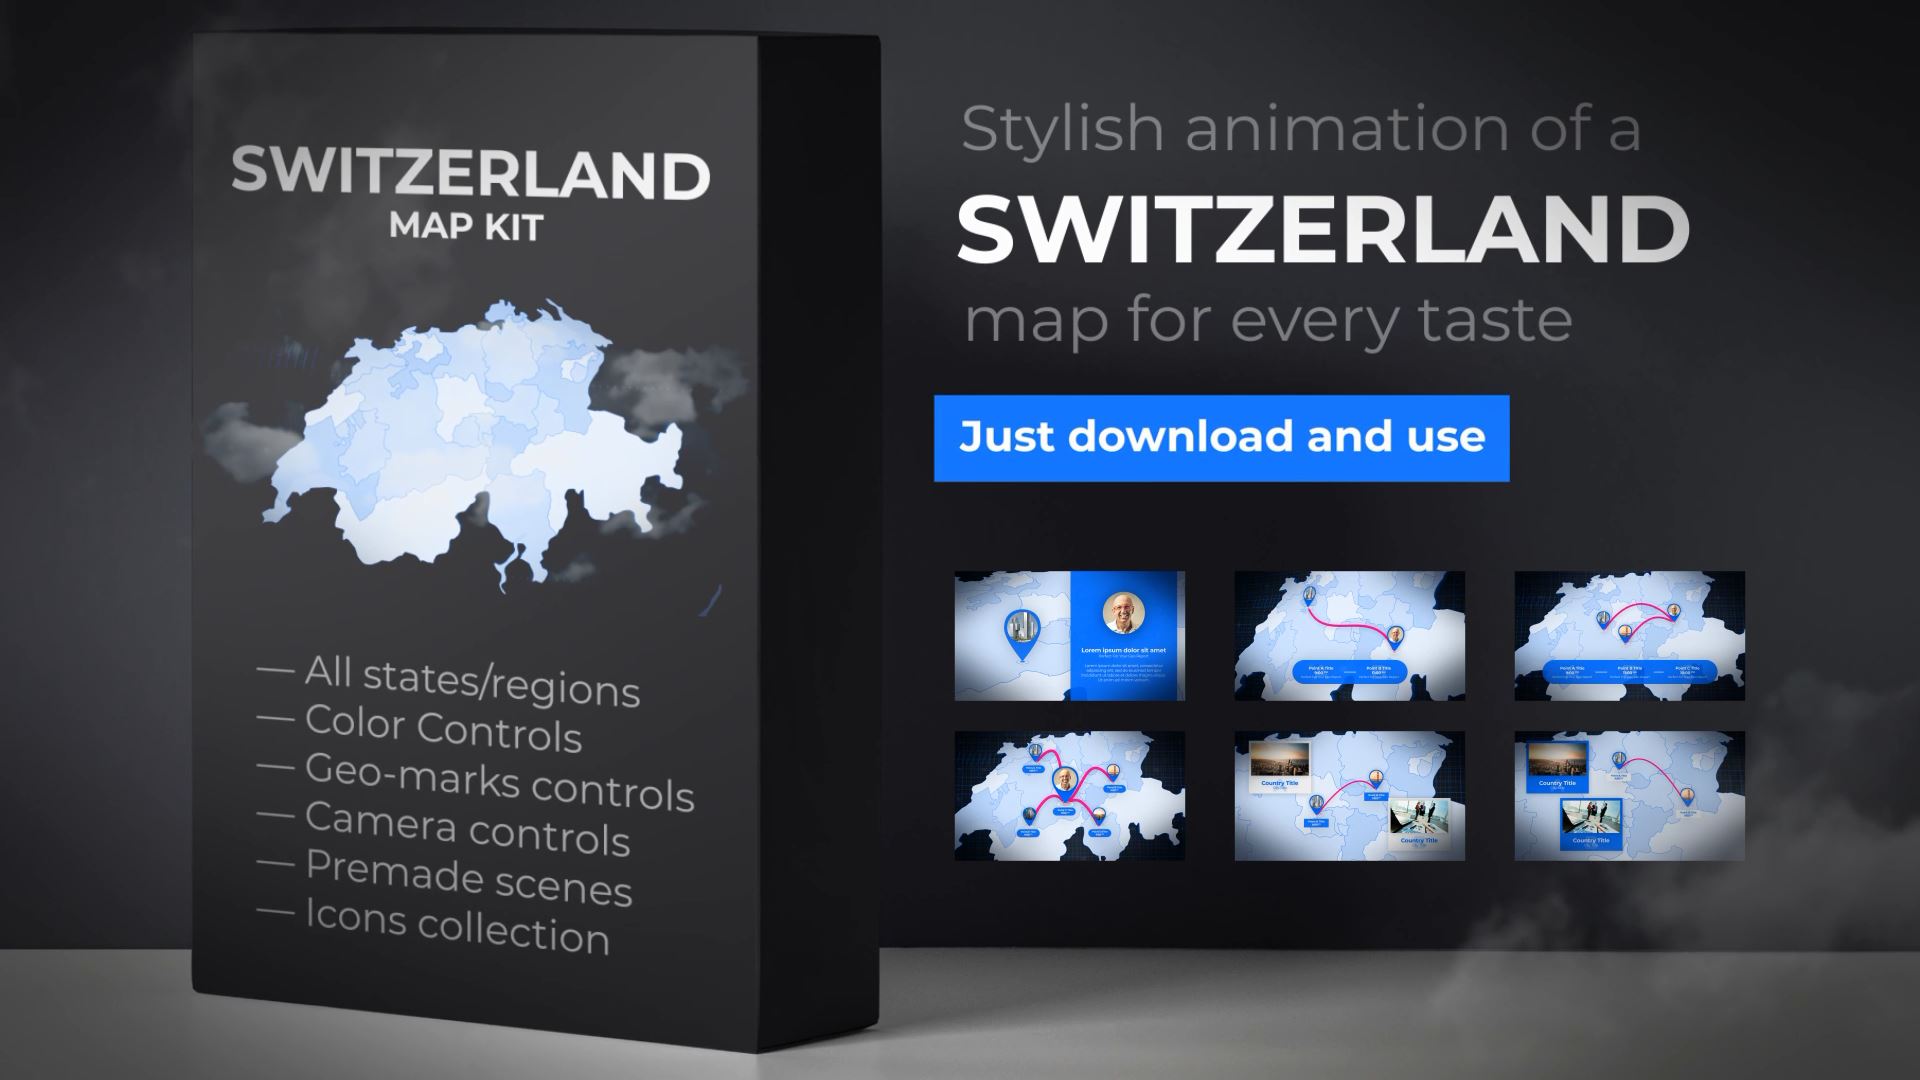  Switzerland Map - Swiss Confederation Map Kit 